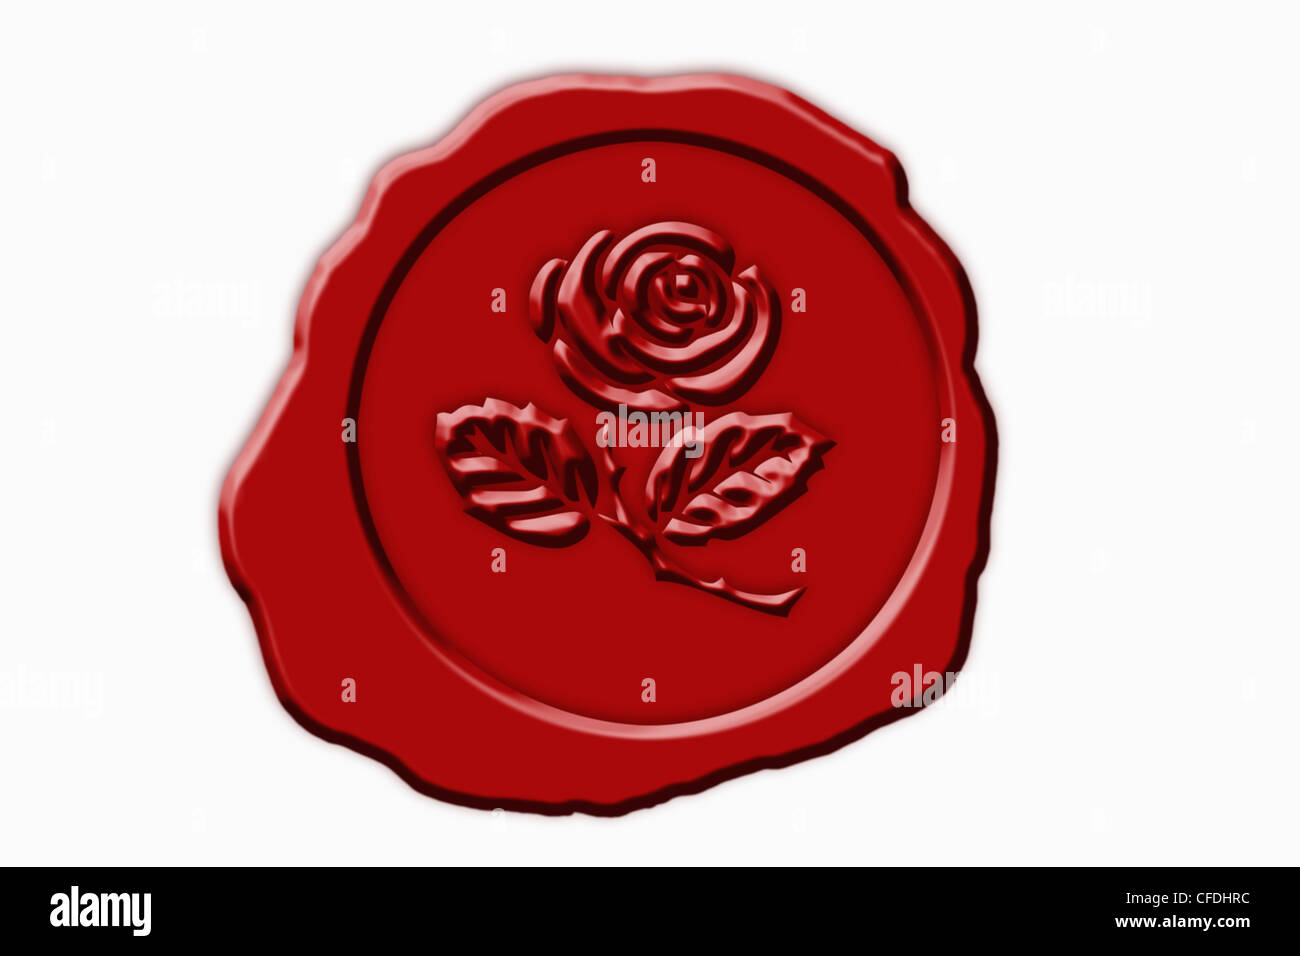 Dettaglio foto di un sigillo rosso con un simbolo di rose nel mezzo Foto Stock